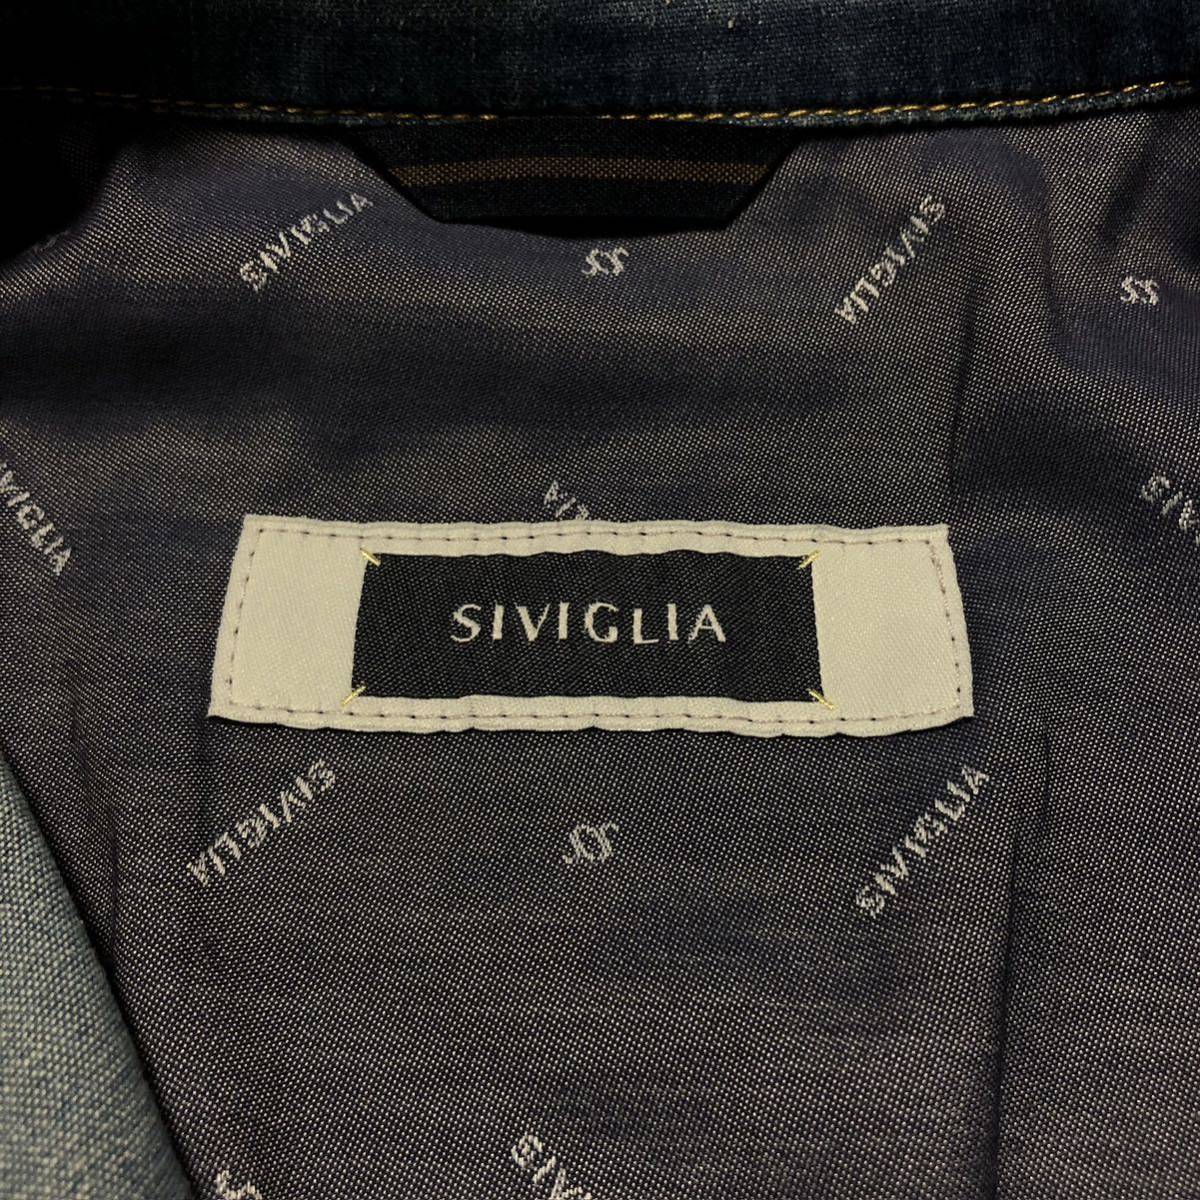 SIVIGLIA シビリア ライトウェイト デニムジャケット Gジャン ブルー サイズ46 Mサイズ相当 イタリア製 メンズ_画像8